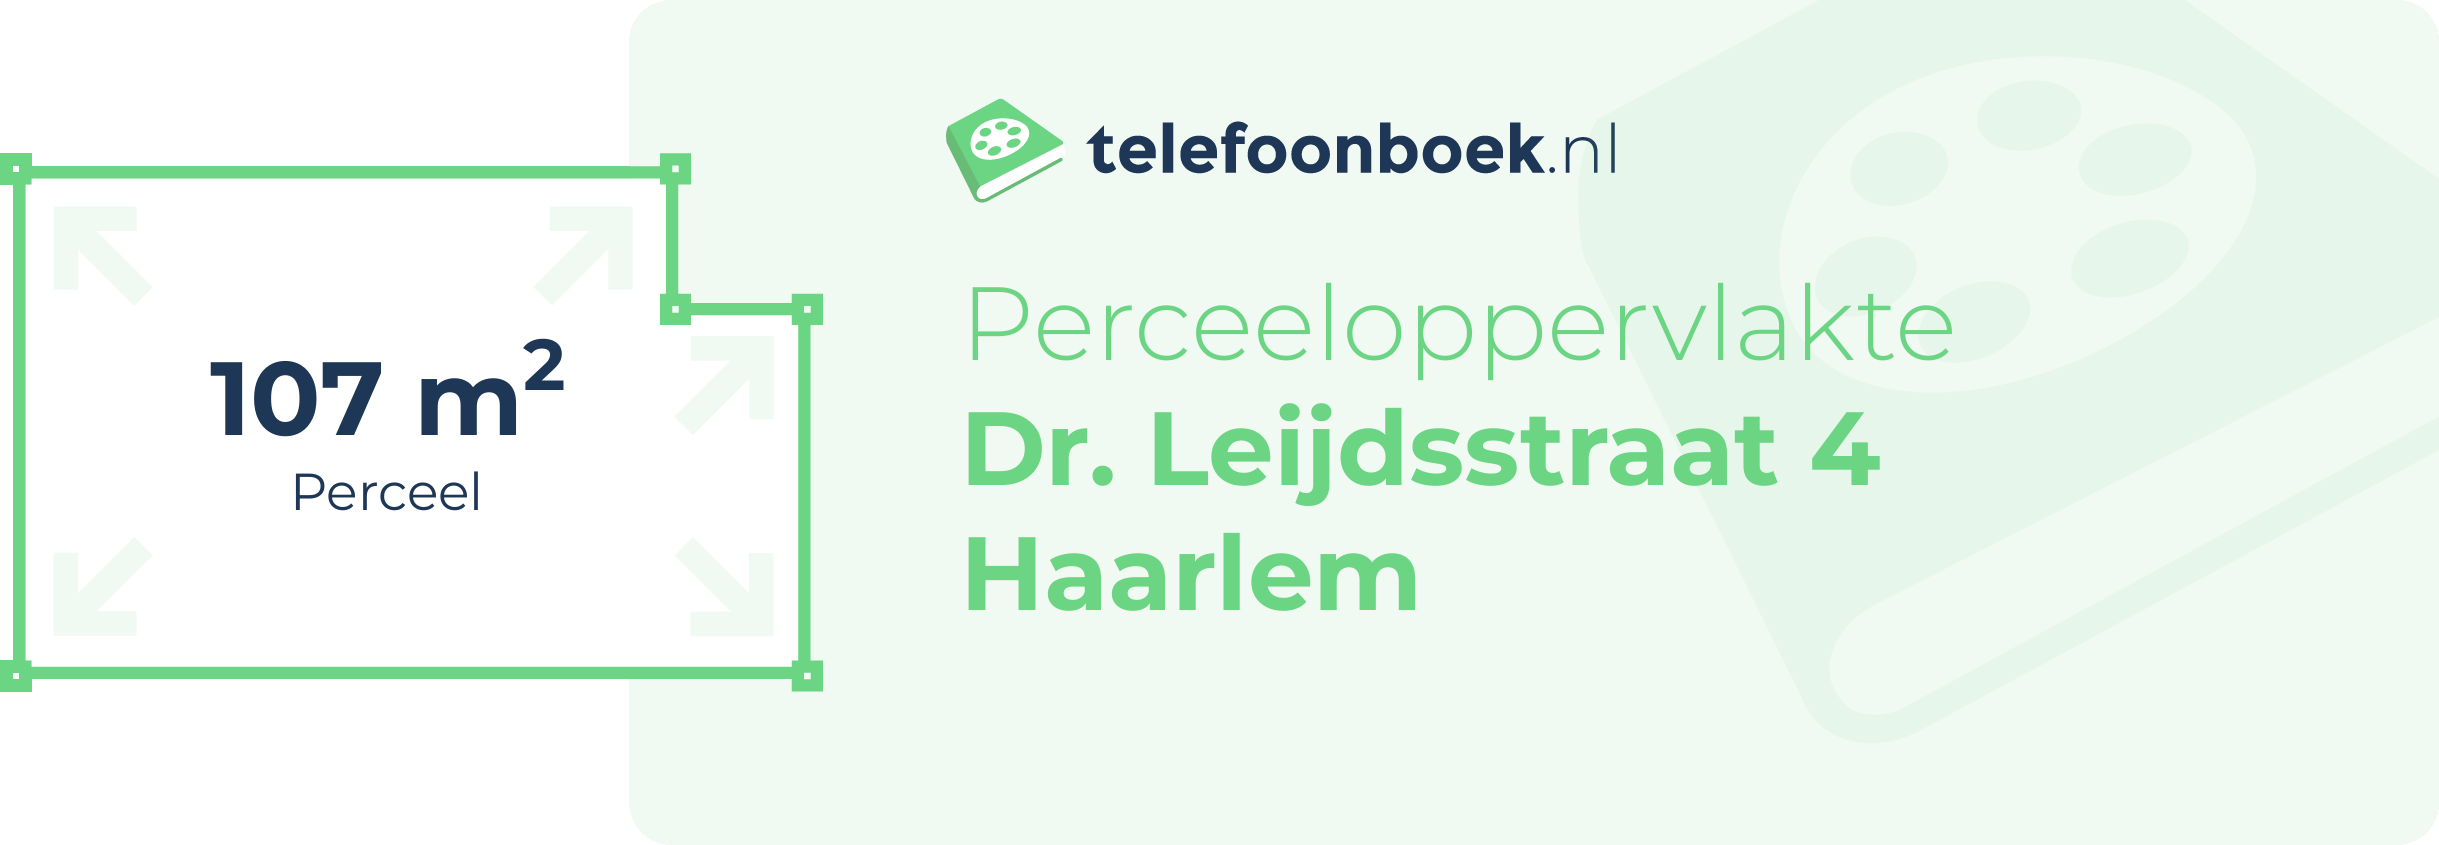 Perceeloppervlakte Dr. Leijdsstraat 4 Haarlem